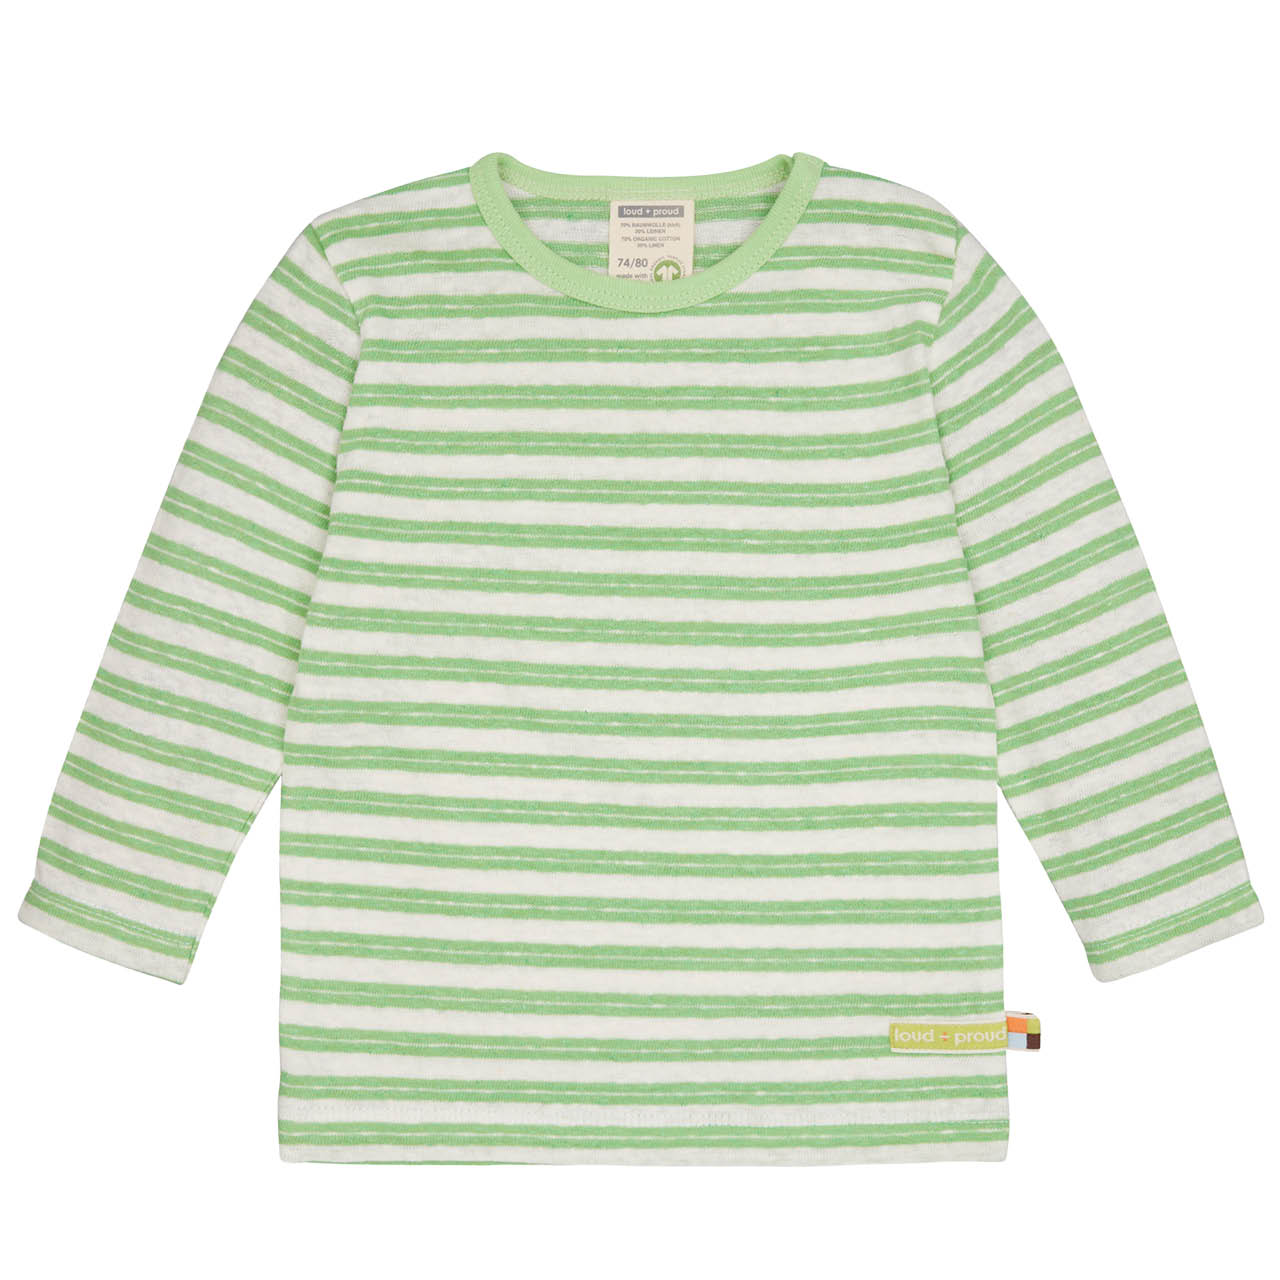 Luftiges Leinen Shirt langarm hellgrün geringelt